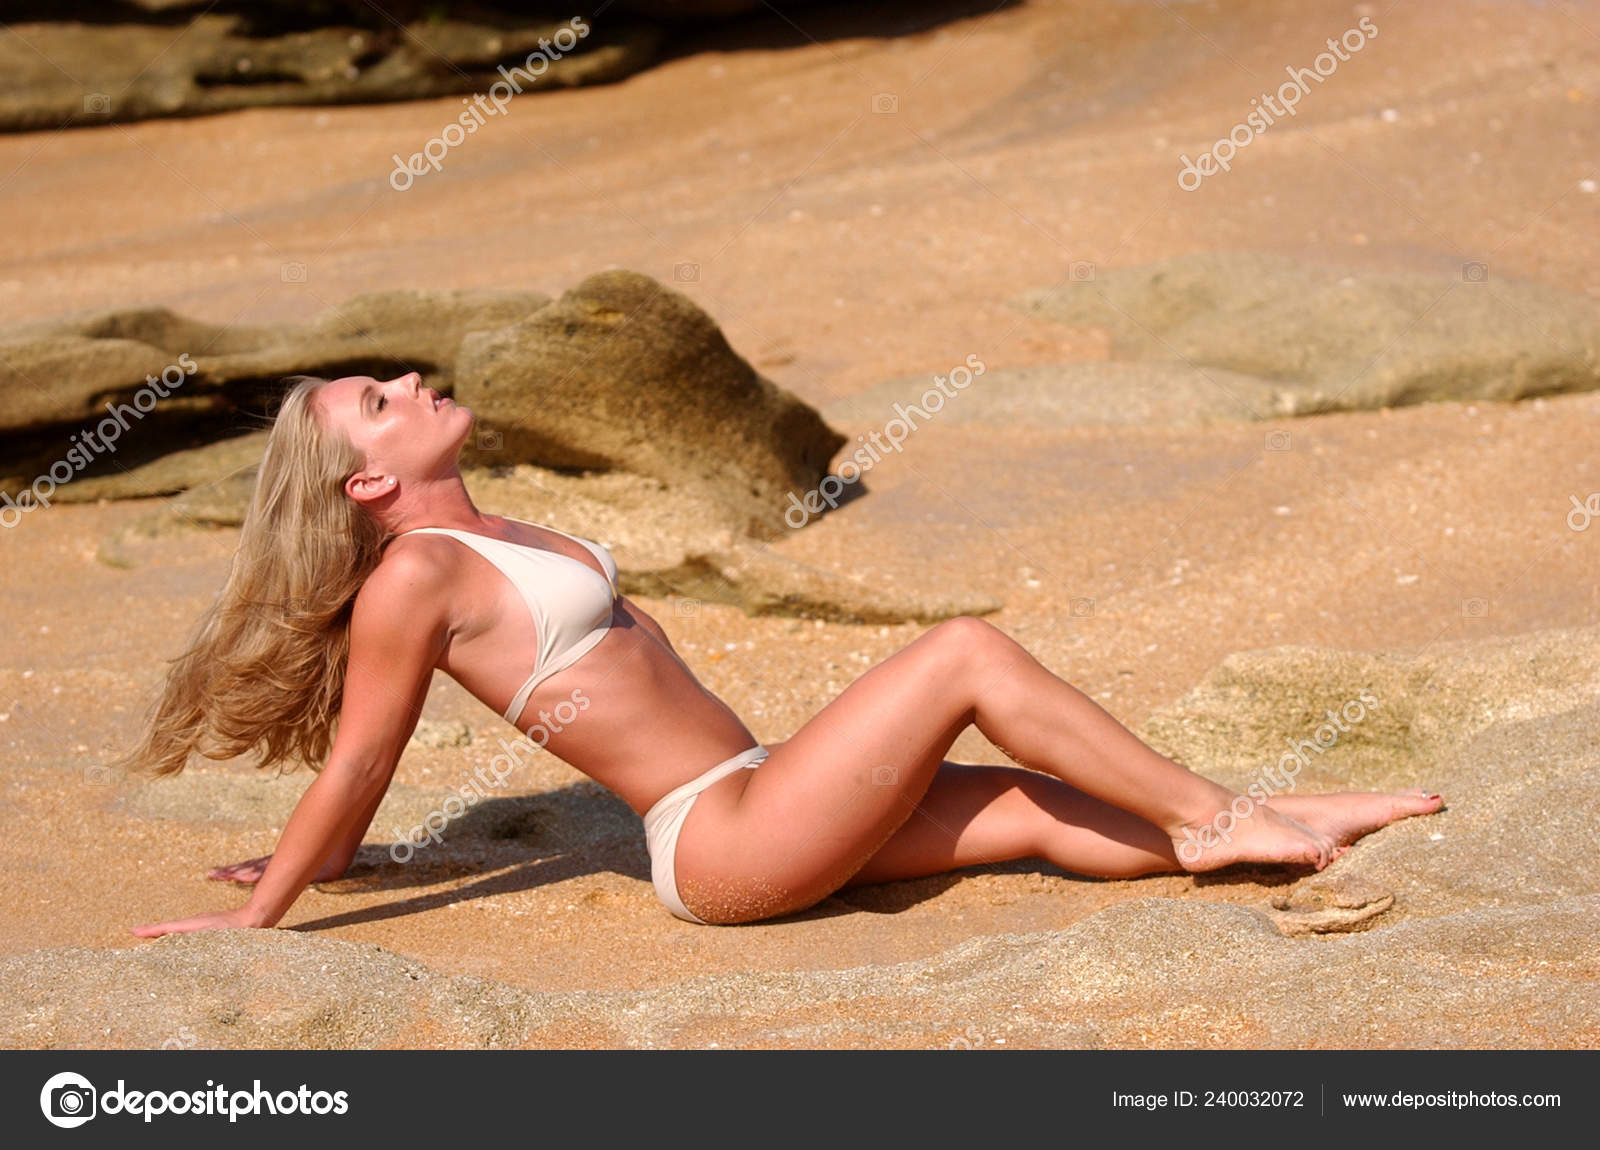 tahlia paris beach nude